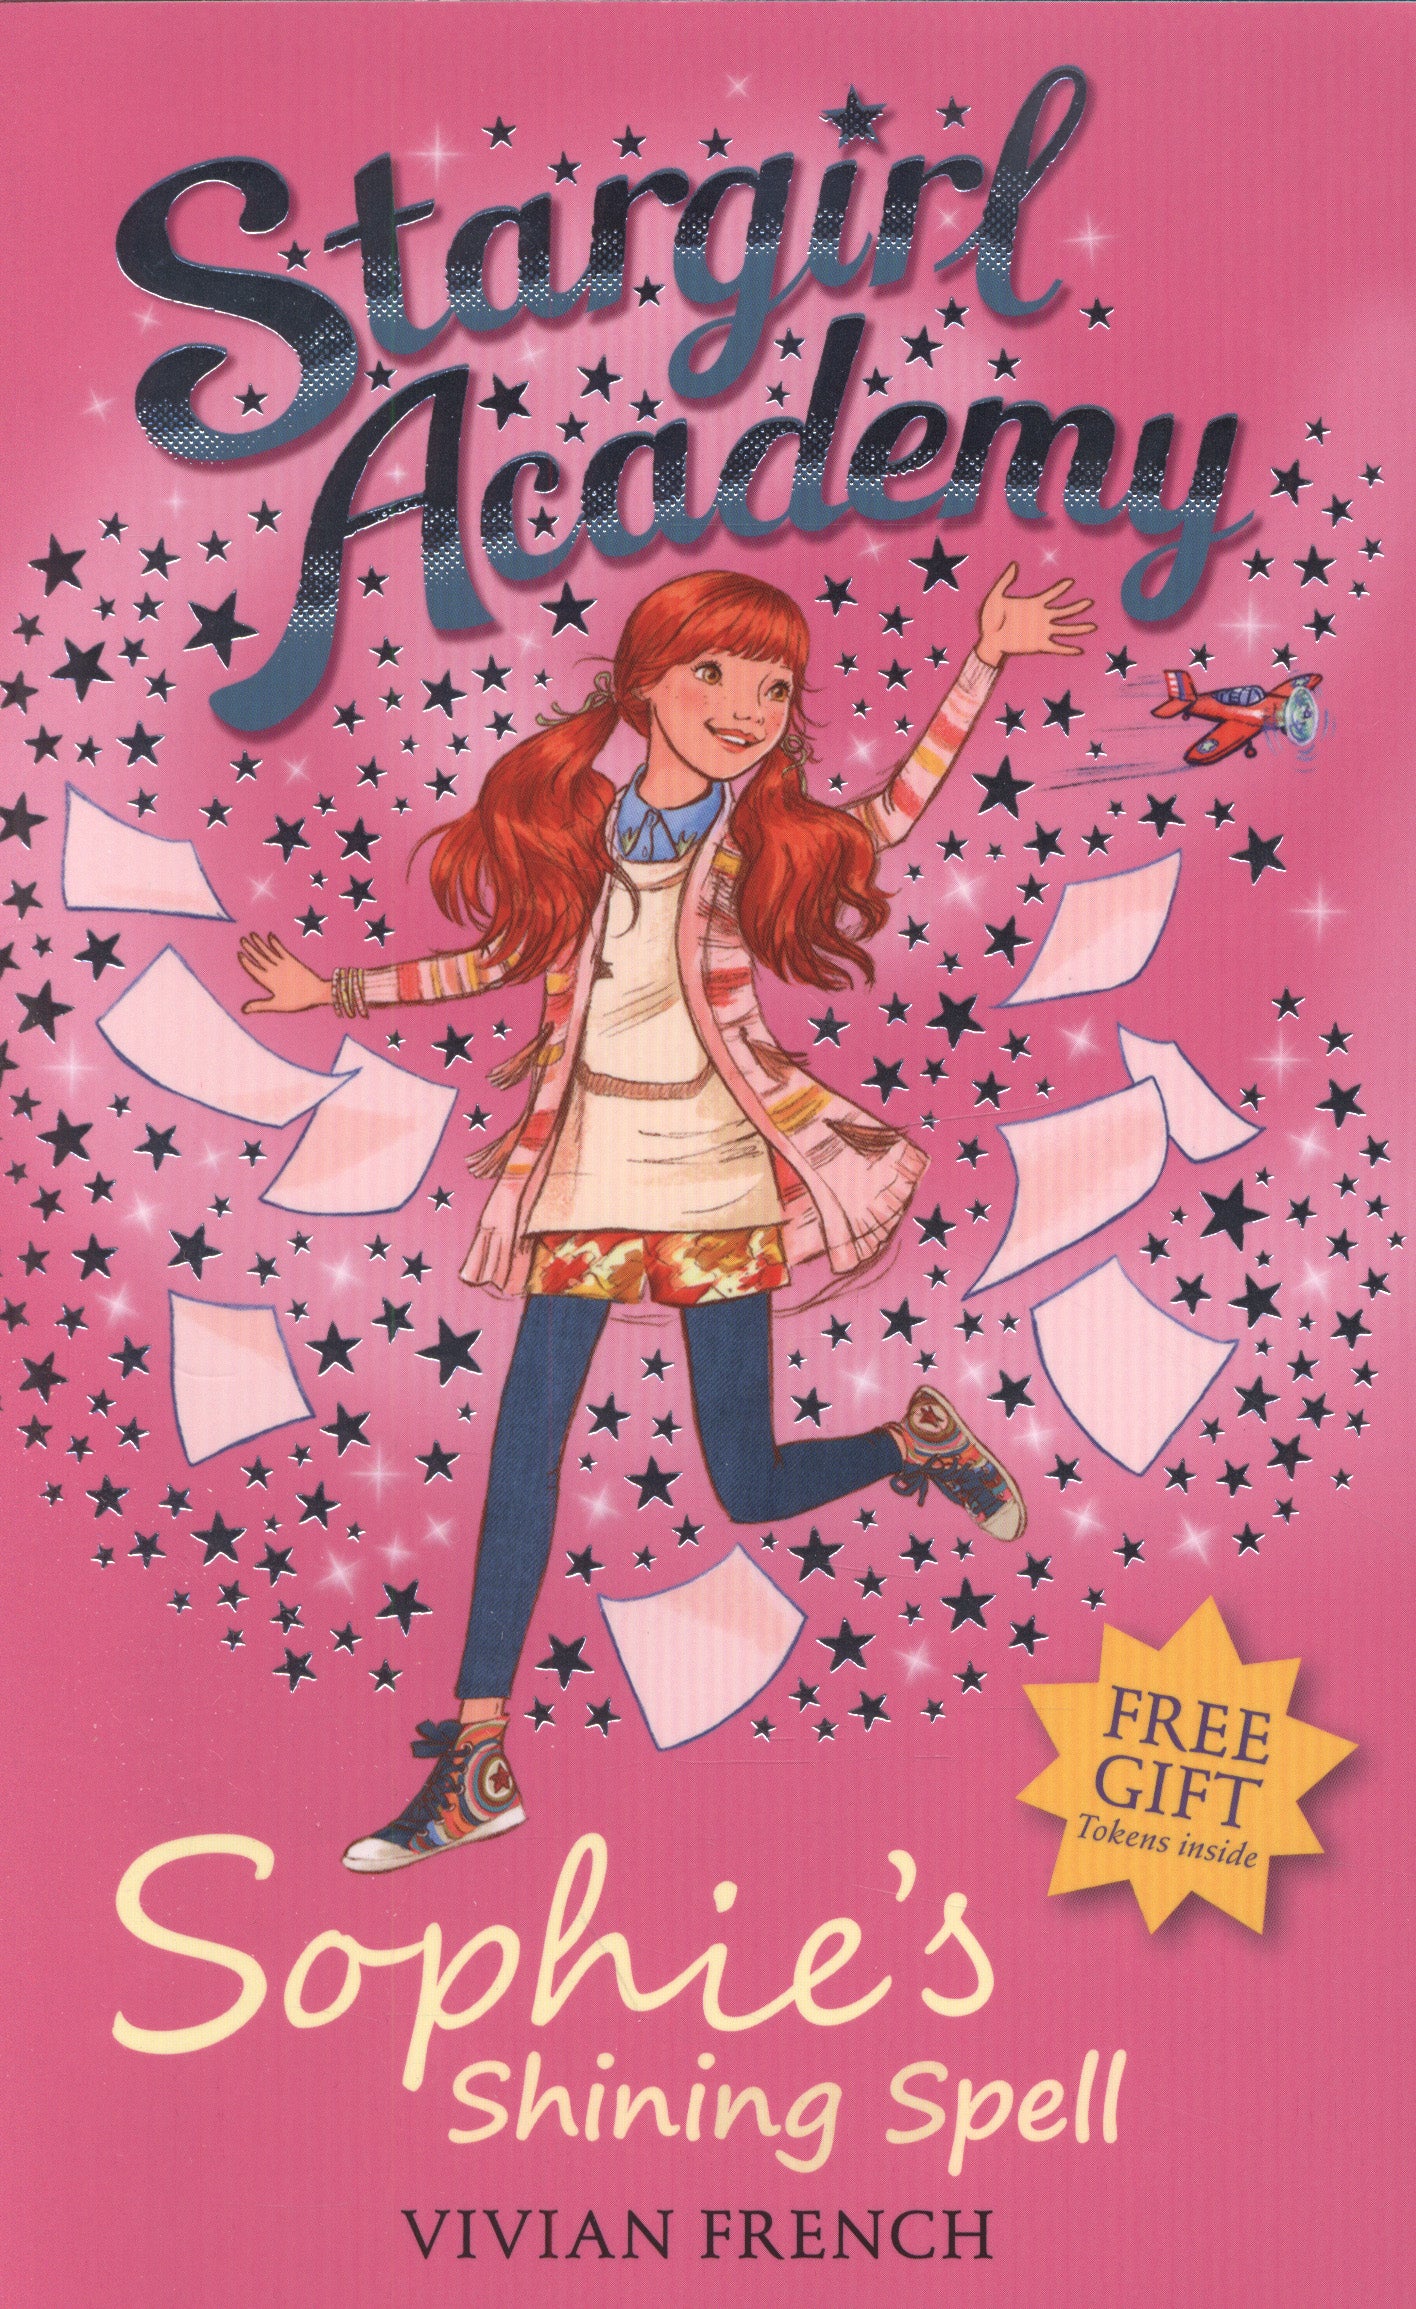 Stargirl Academy -Sophie's Shining Spell